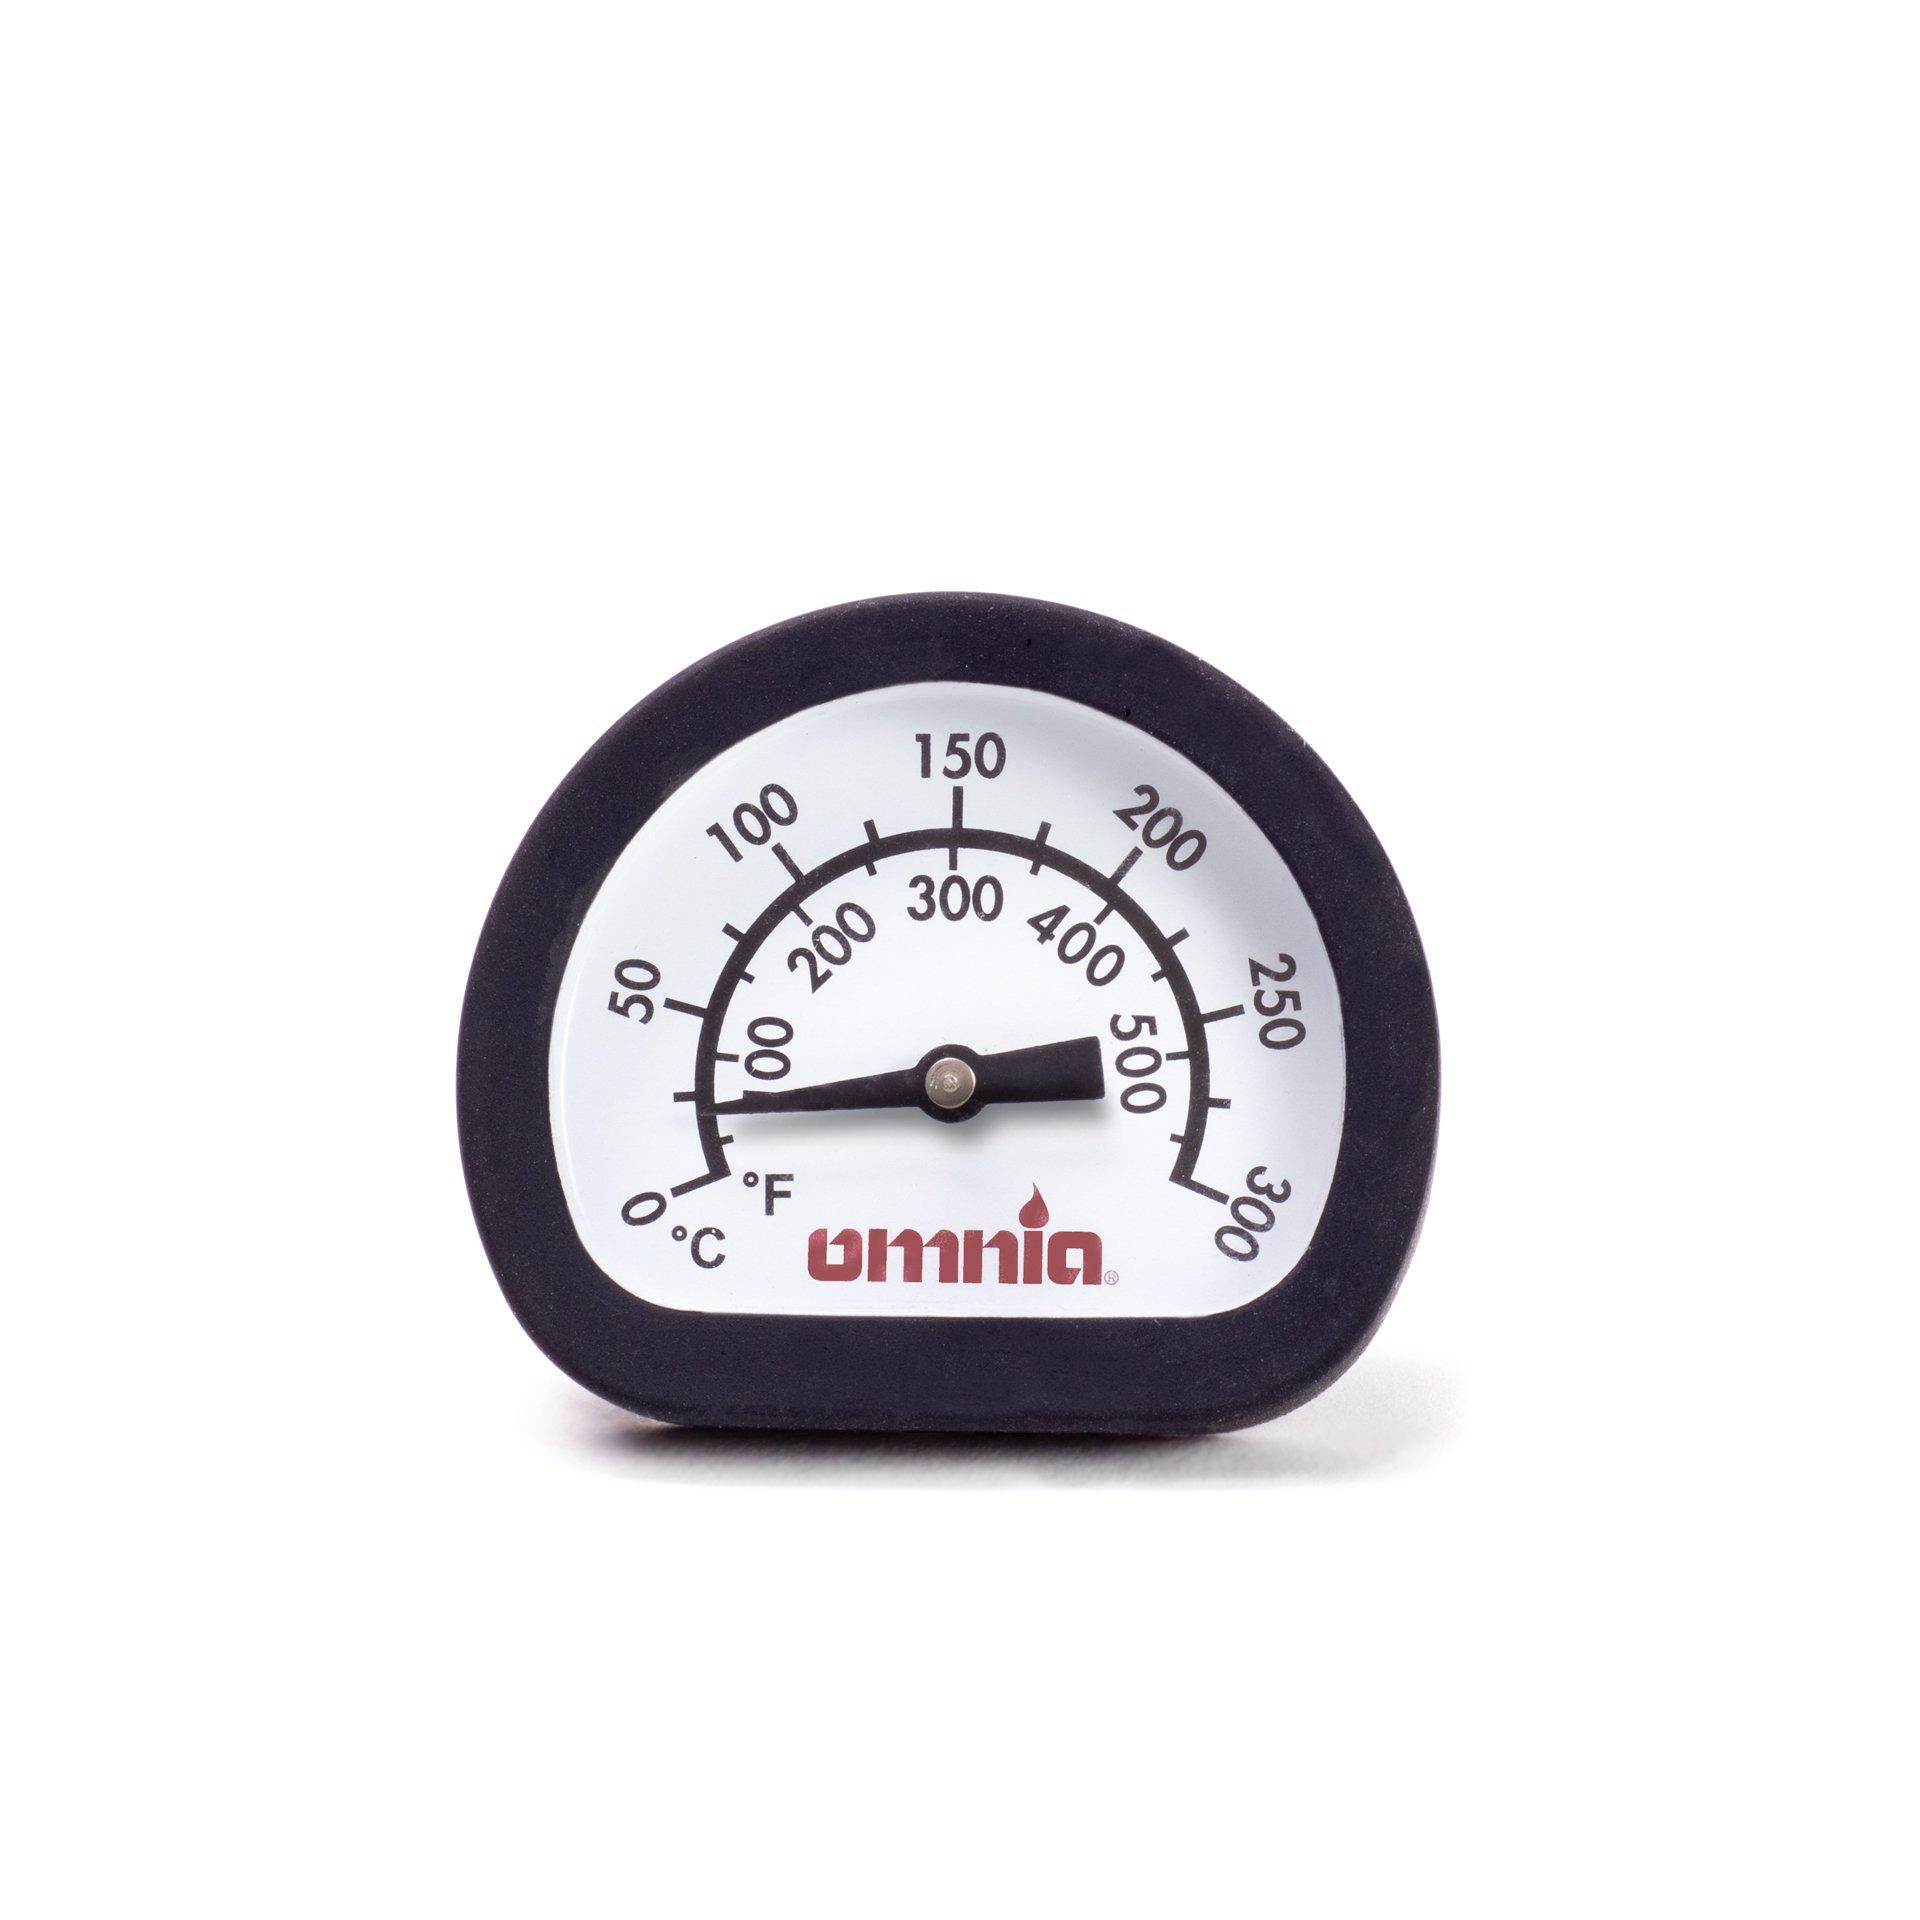 Thermometer für den Omnia Backofen in deinem Camper | Wildnest Glamping